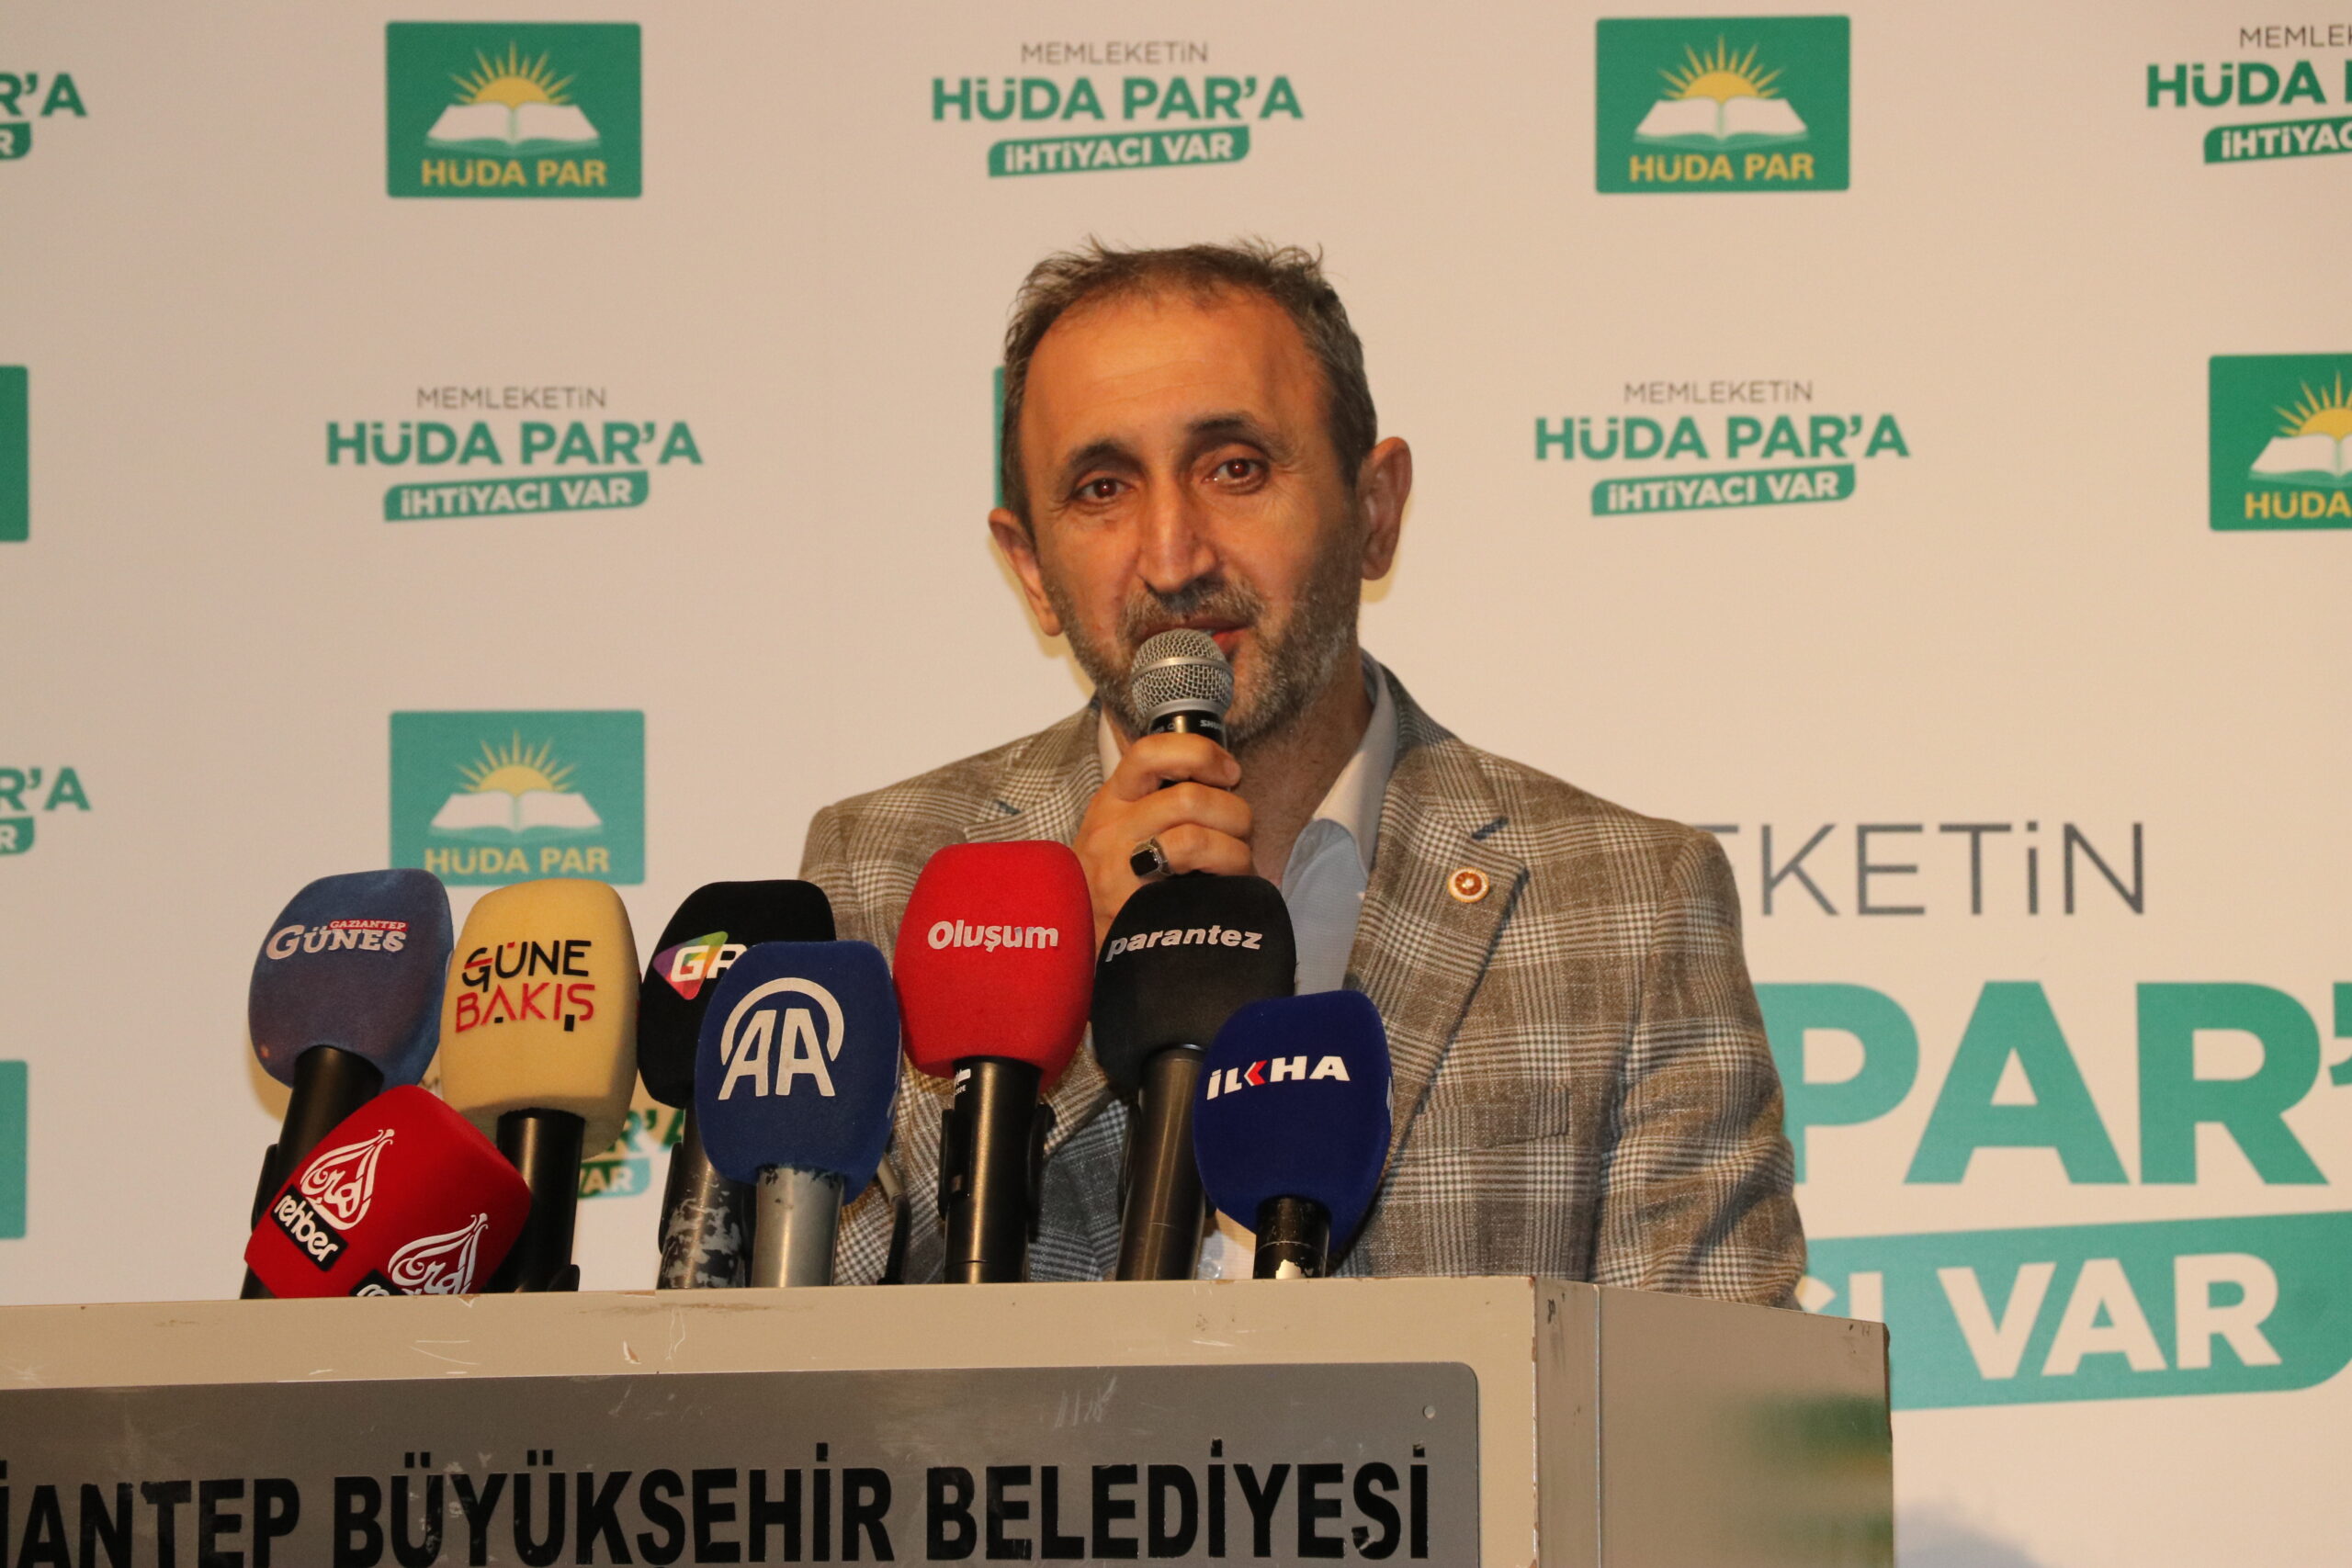 Gaziantep Milletvekili Demir: HÜDA PAR Türkiye siyasetine büyük değer kattı